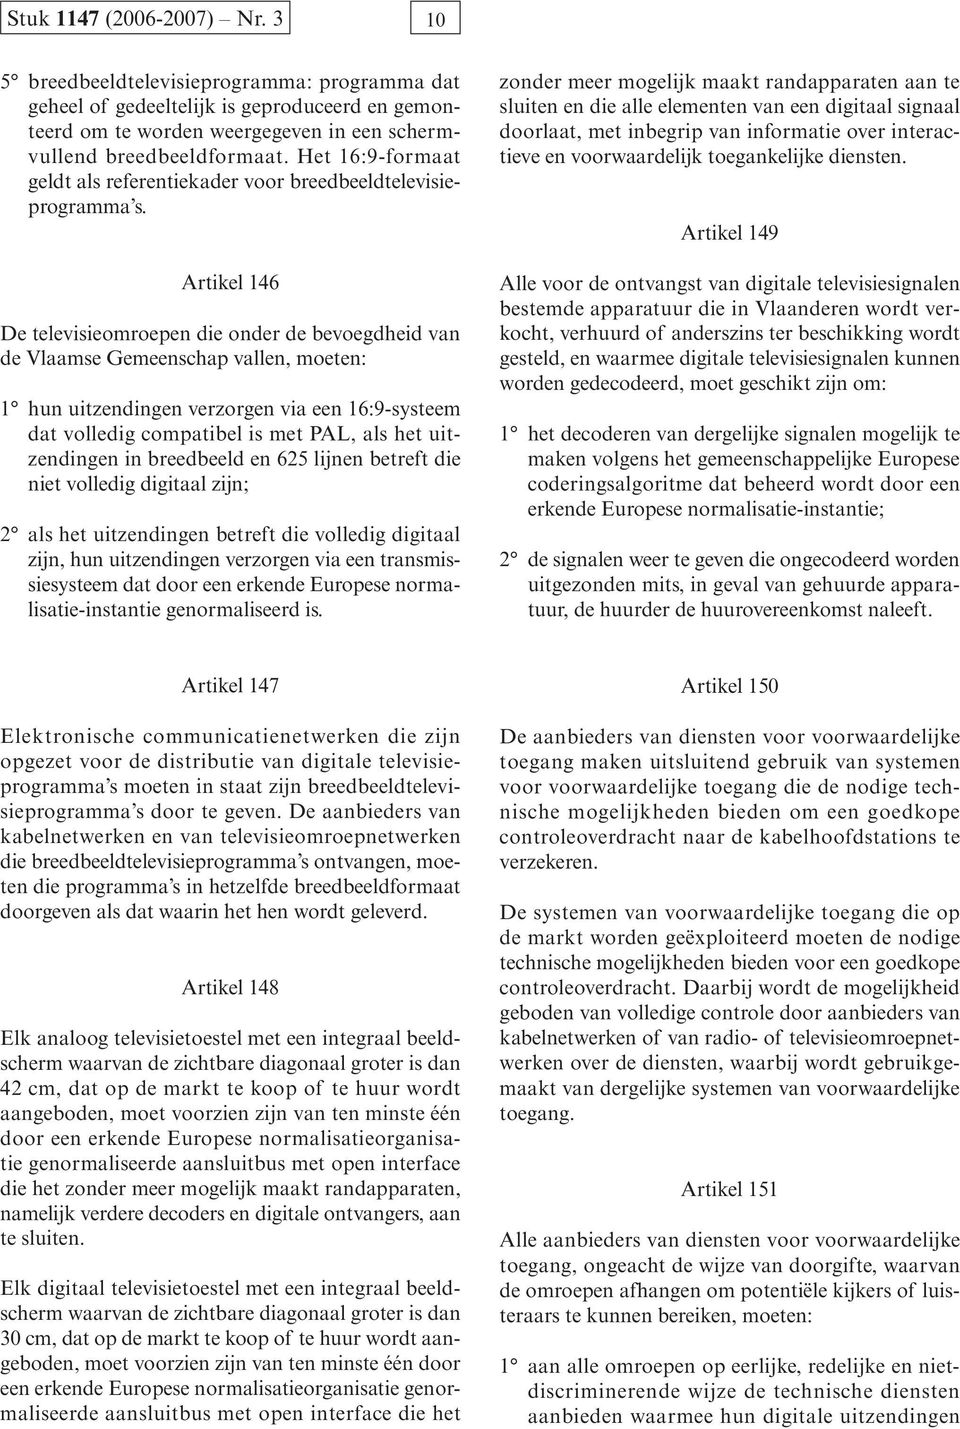 Artikel 146 De televisieomroepen die onder de bevoegdheid van de Vlaamse Gemeenschap vallen, moeten: 1 hun uitzendingen verzorgen via een 16:9-systeem dat volledig compatibel is met PAL, als het